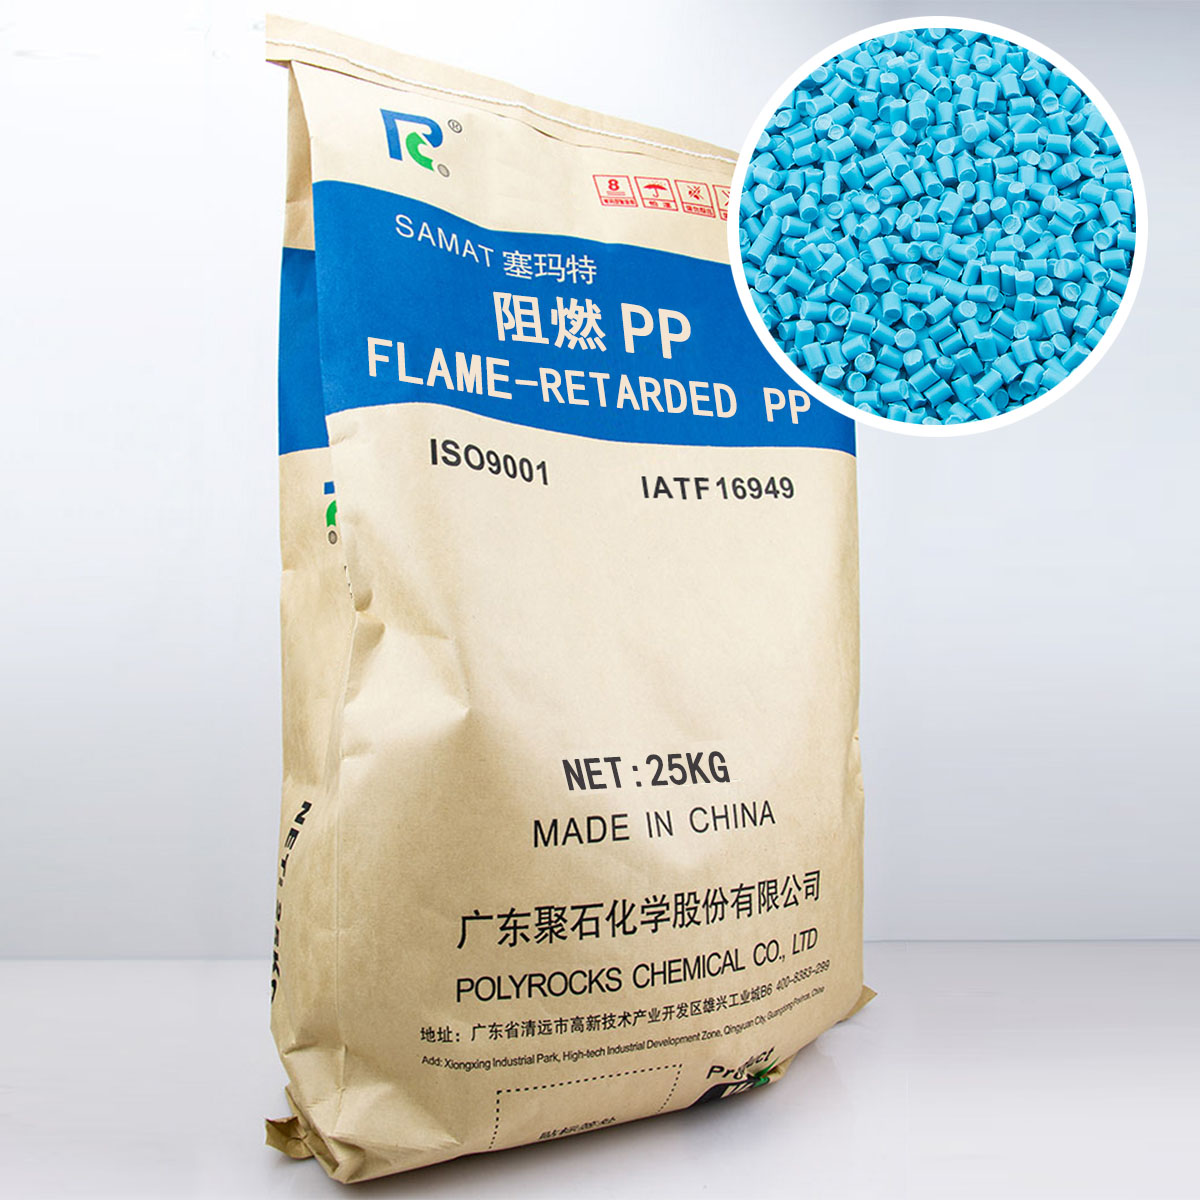 阻燃PP(蓝色粒子)——聚石化学包装